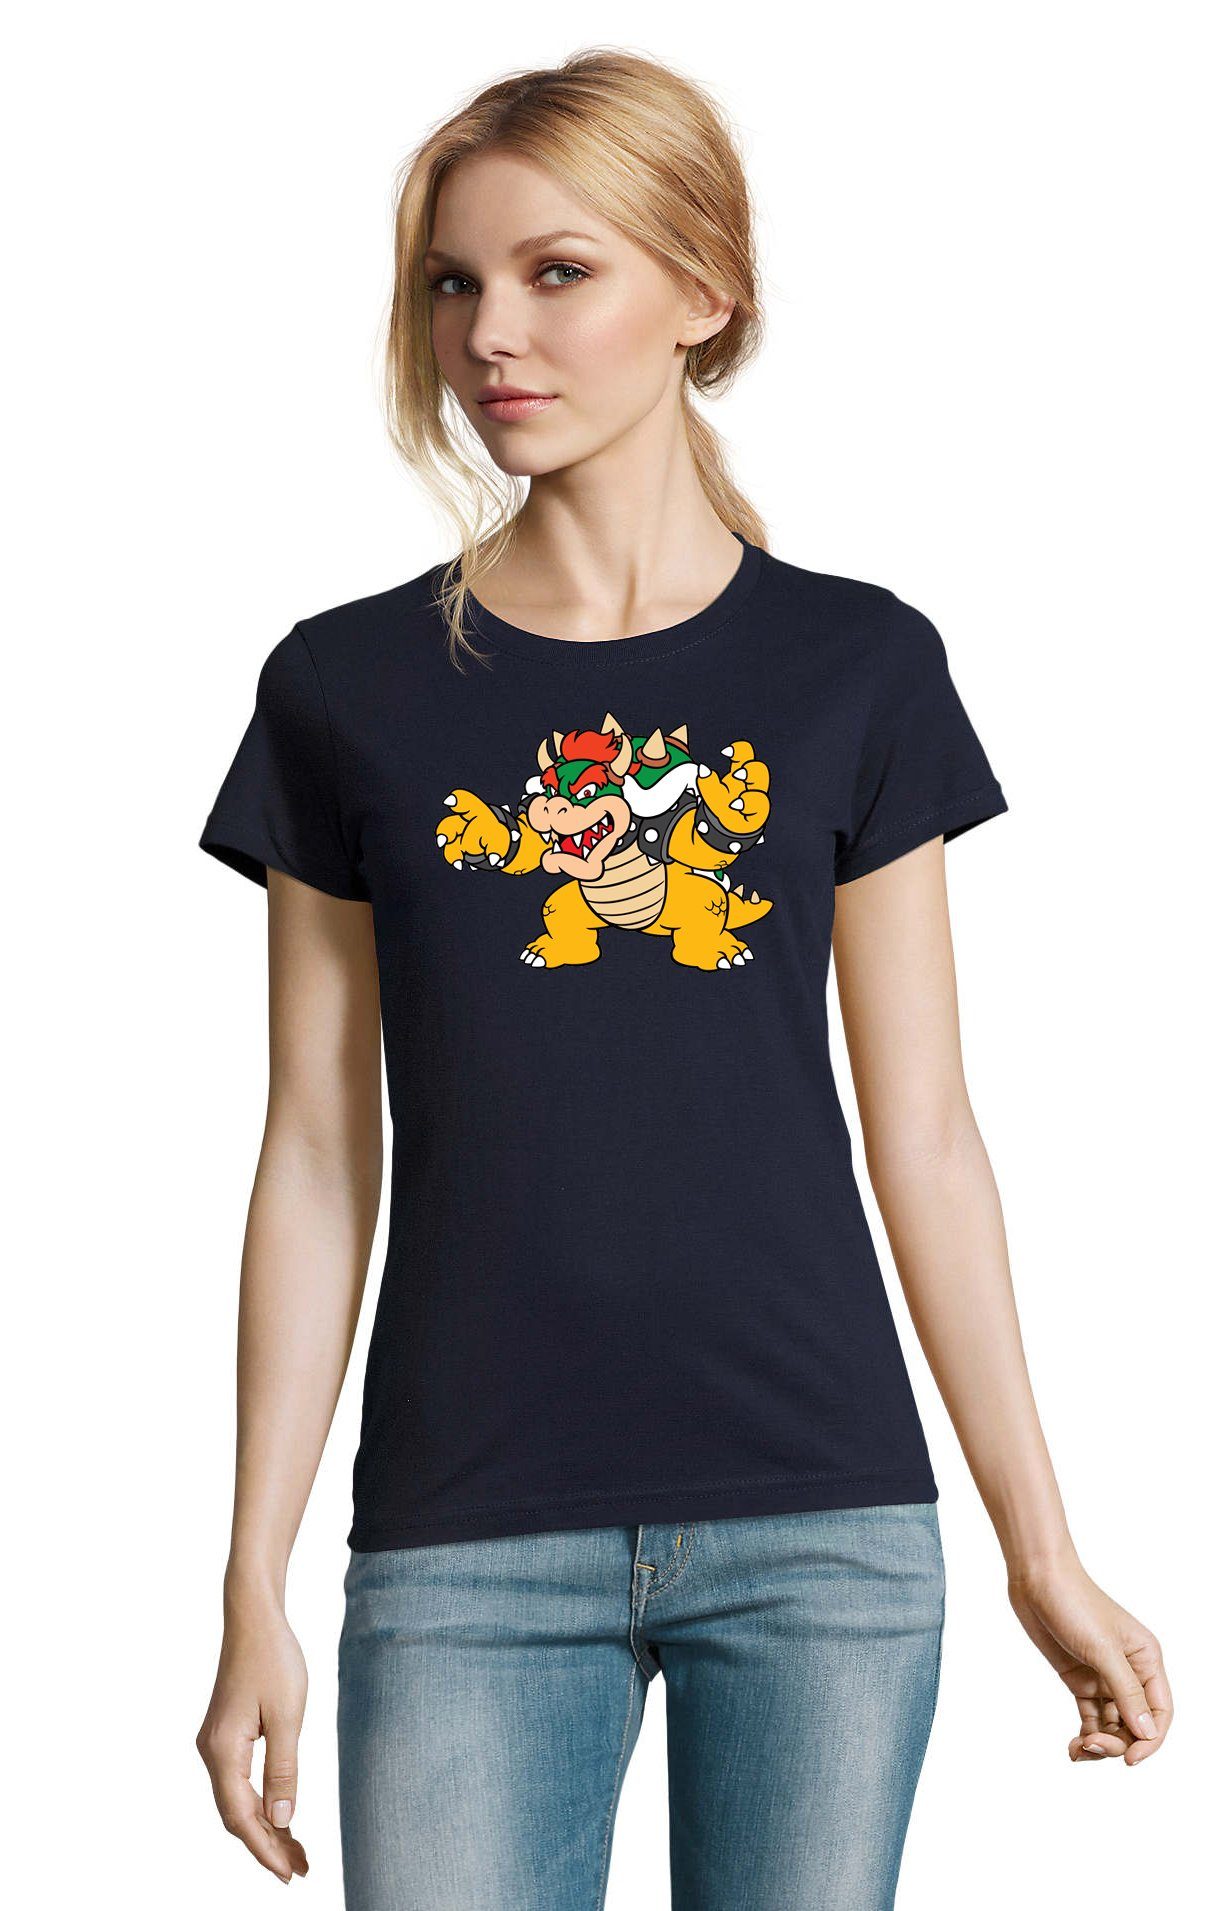 & Bowser Gaming Navyblau Damen Blondie Konsole T-Shirt Brownie Gamer Game Luigi Yoshi Nintendo Mario